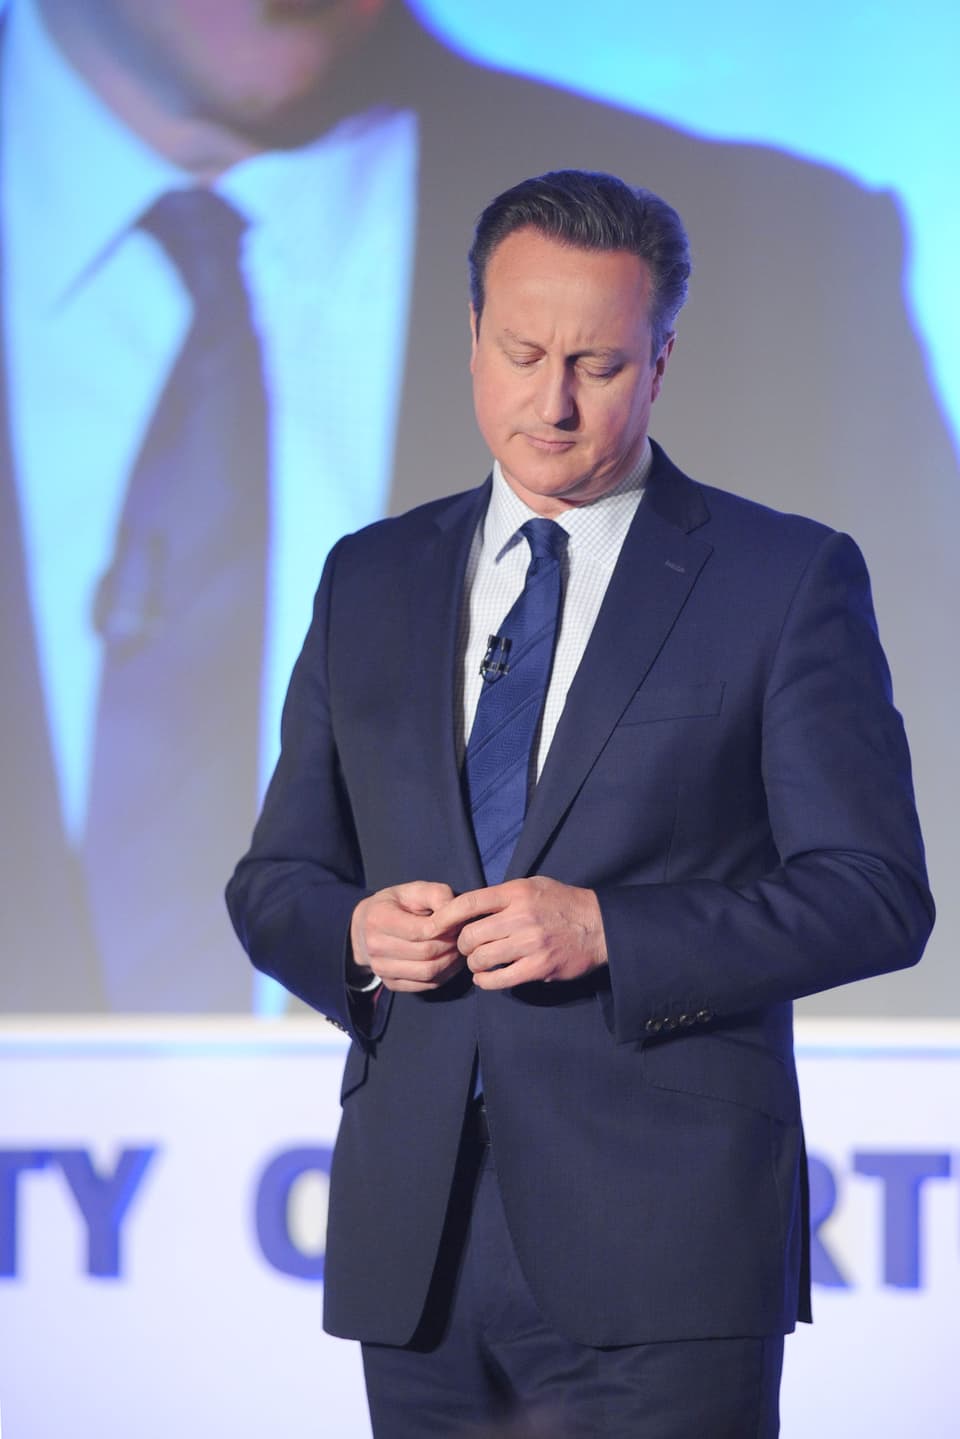 Cameron mit nach unten gesenktem Blick auf dem Podium des Parteitags der Konservativen.